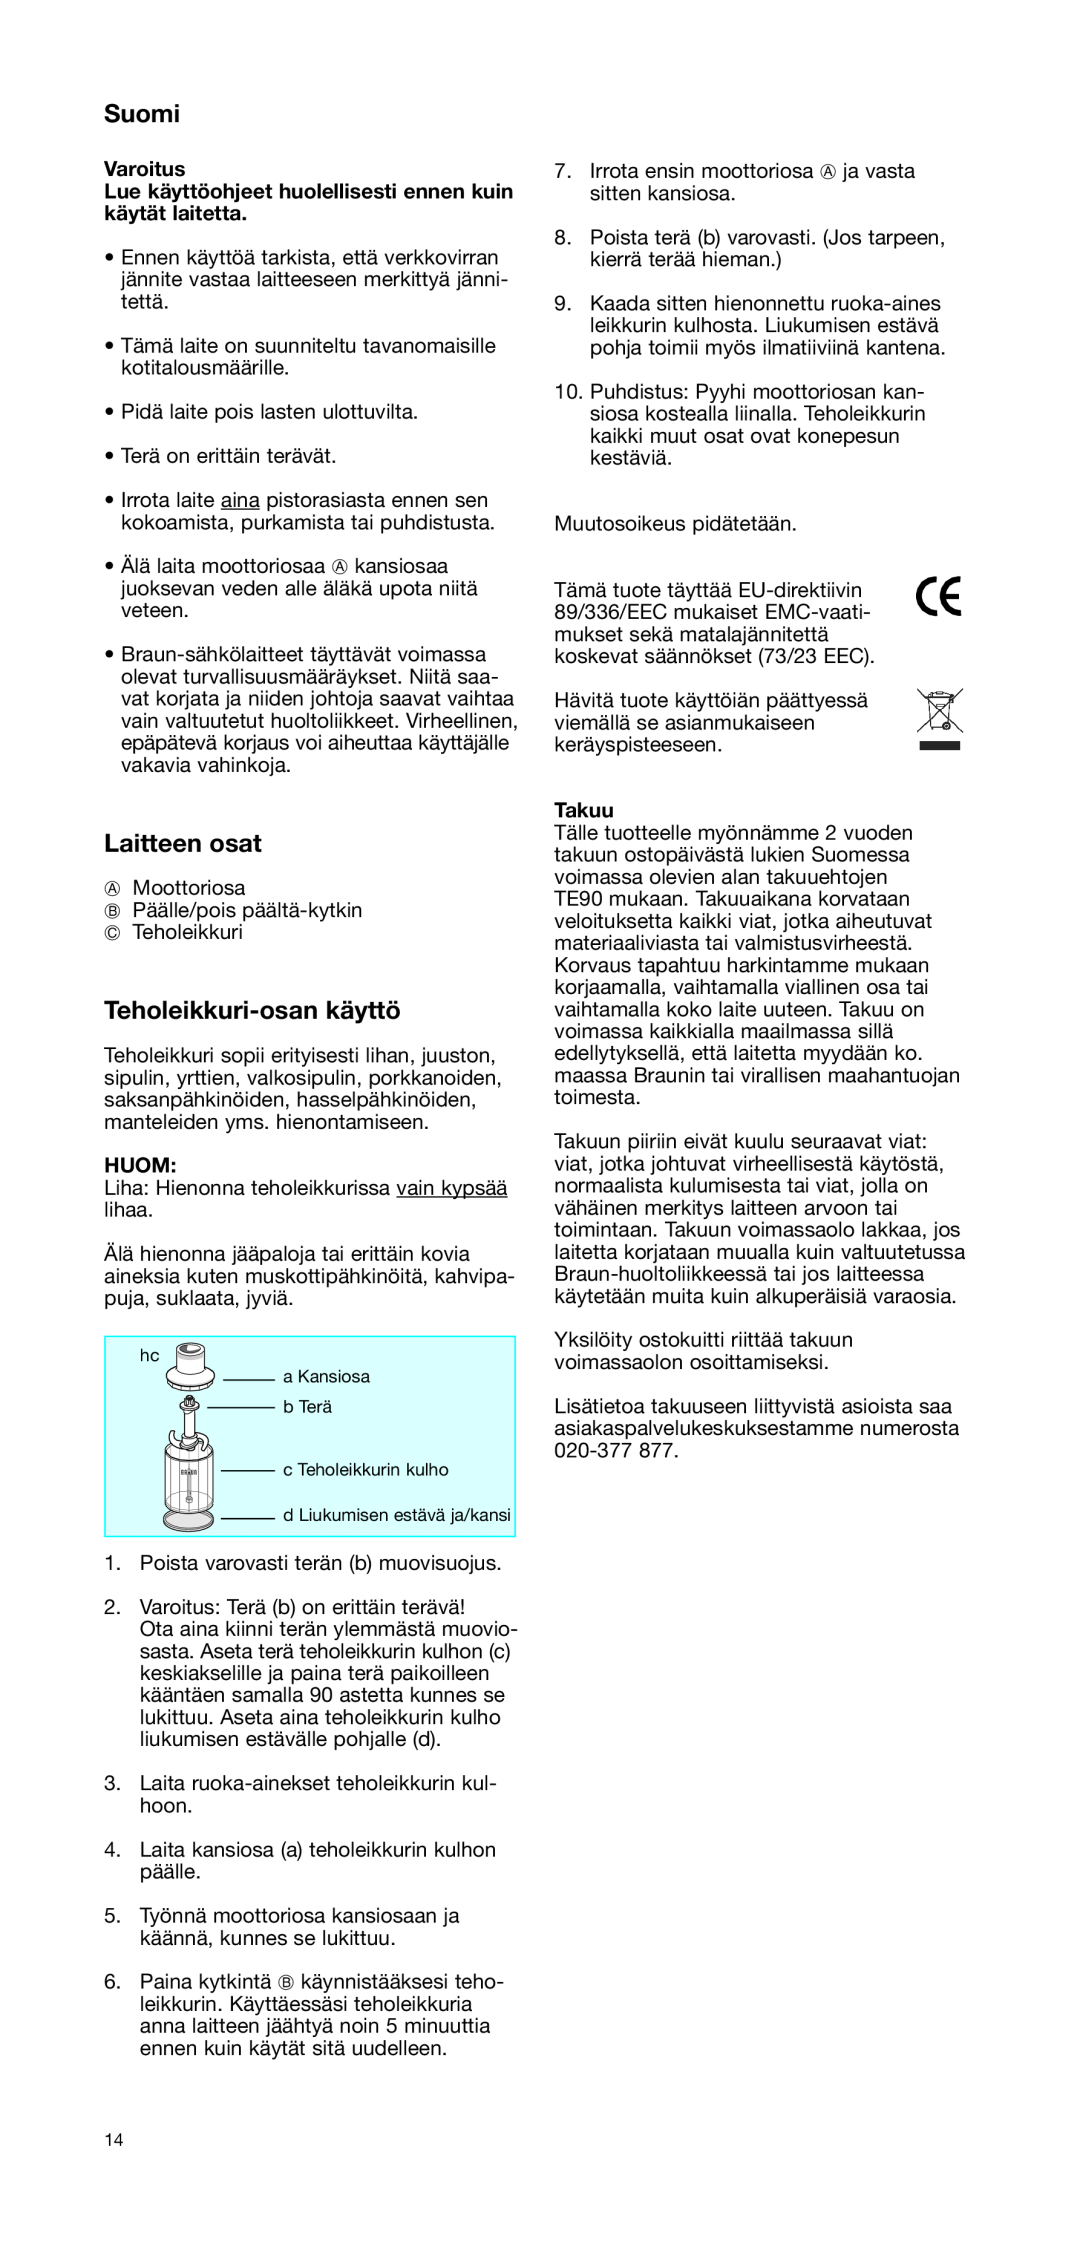 Braun CH 100 manual Suomi, Laitteen osat, Teholeikkuri-osankäyttö, Varoitus, Huom, Takuu 